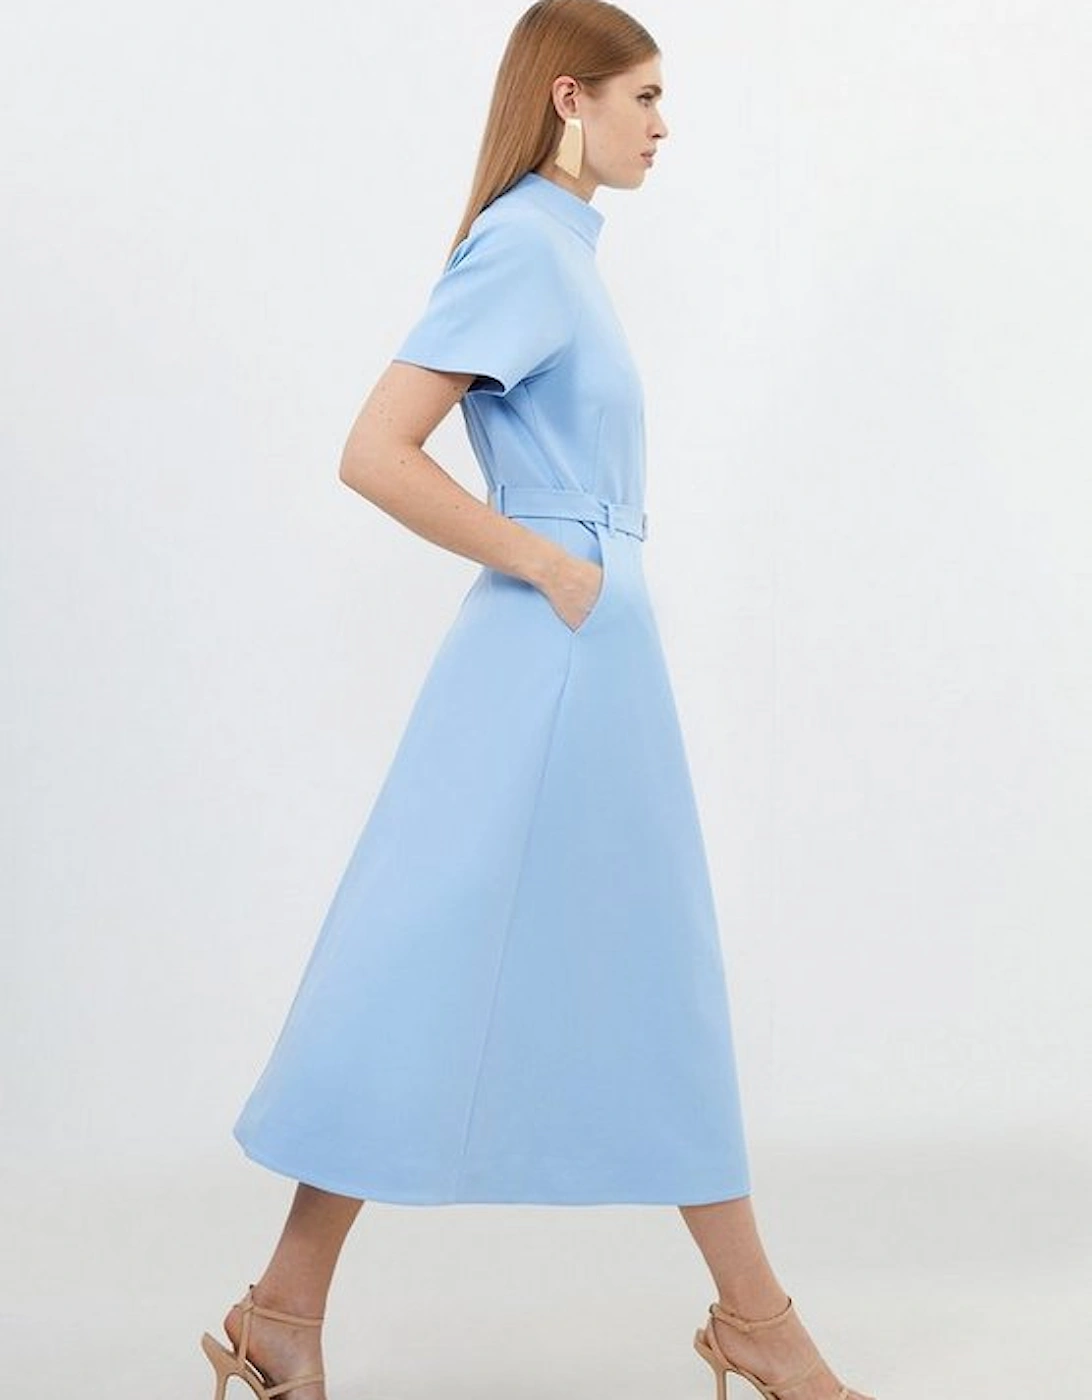 Tailored Belted Full Skirt Midi Dress